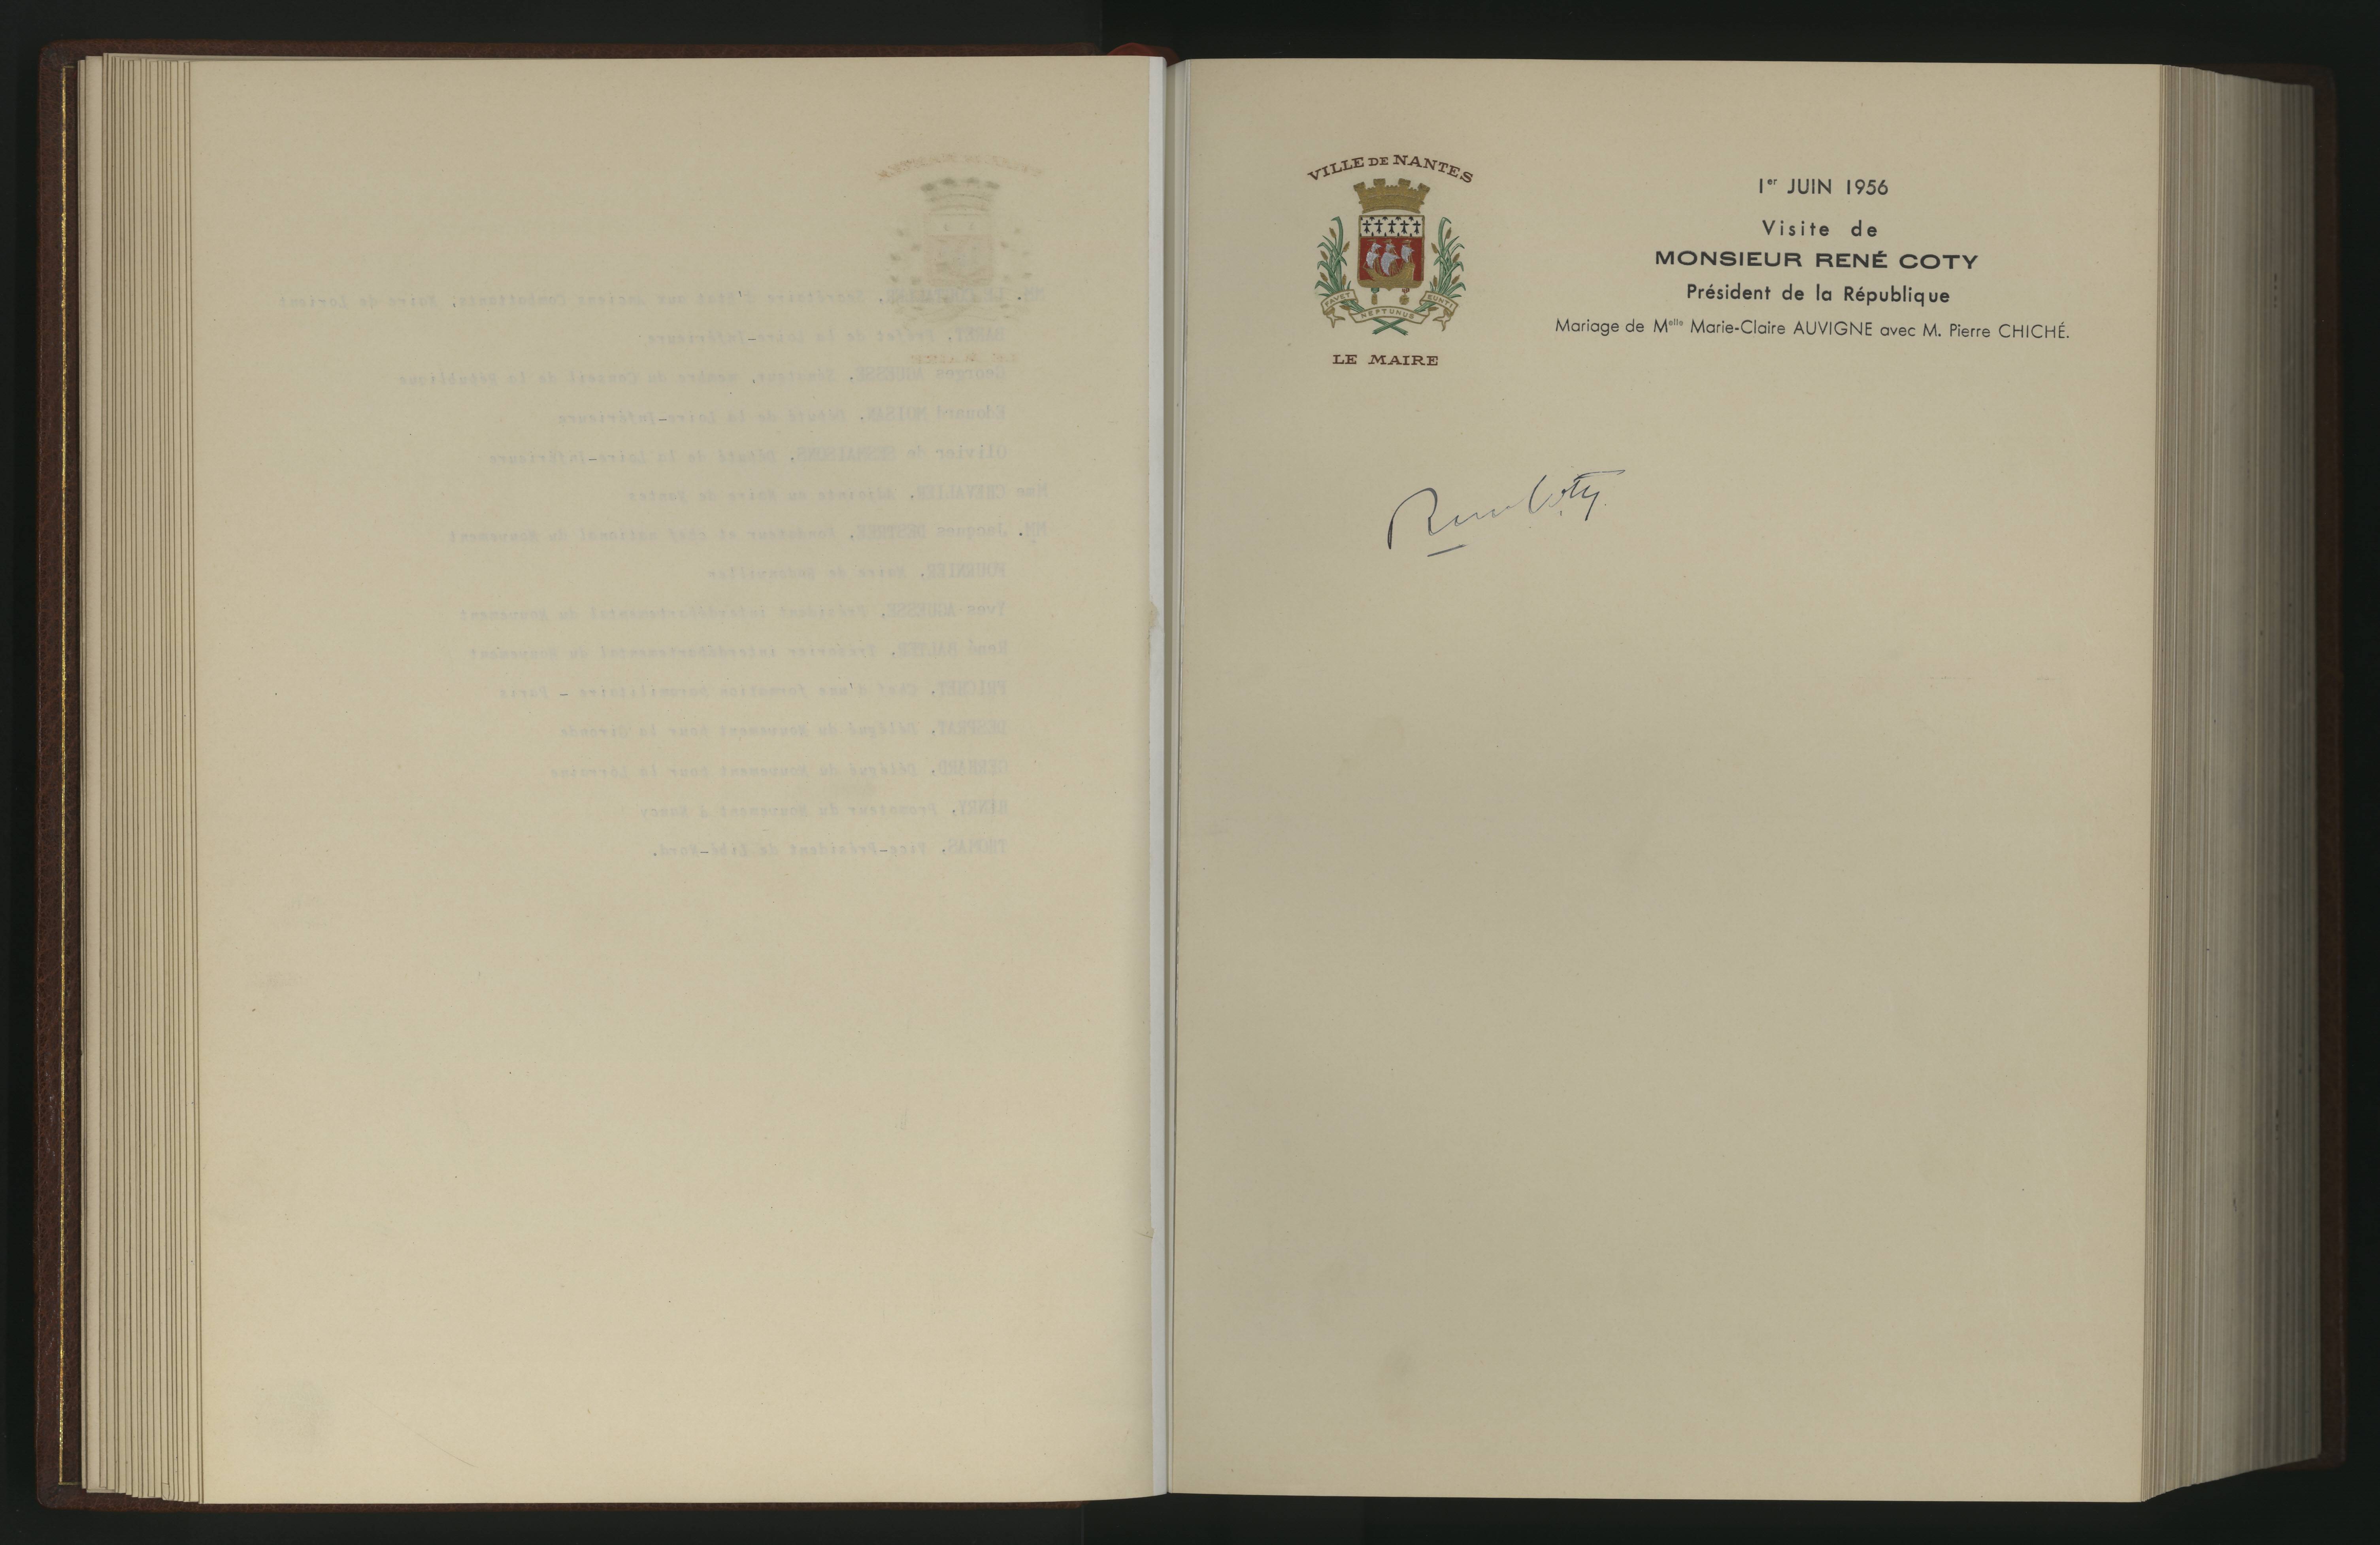 Page extraite du Livre d'or de la Ville de Nantes, portant la signature de René Coty le 1er juin 1956 (1597W)